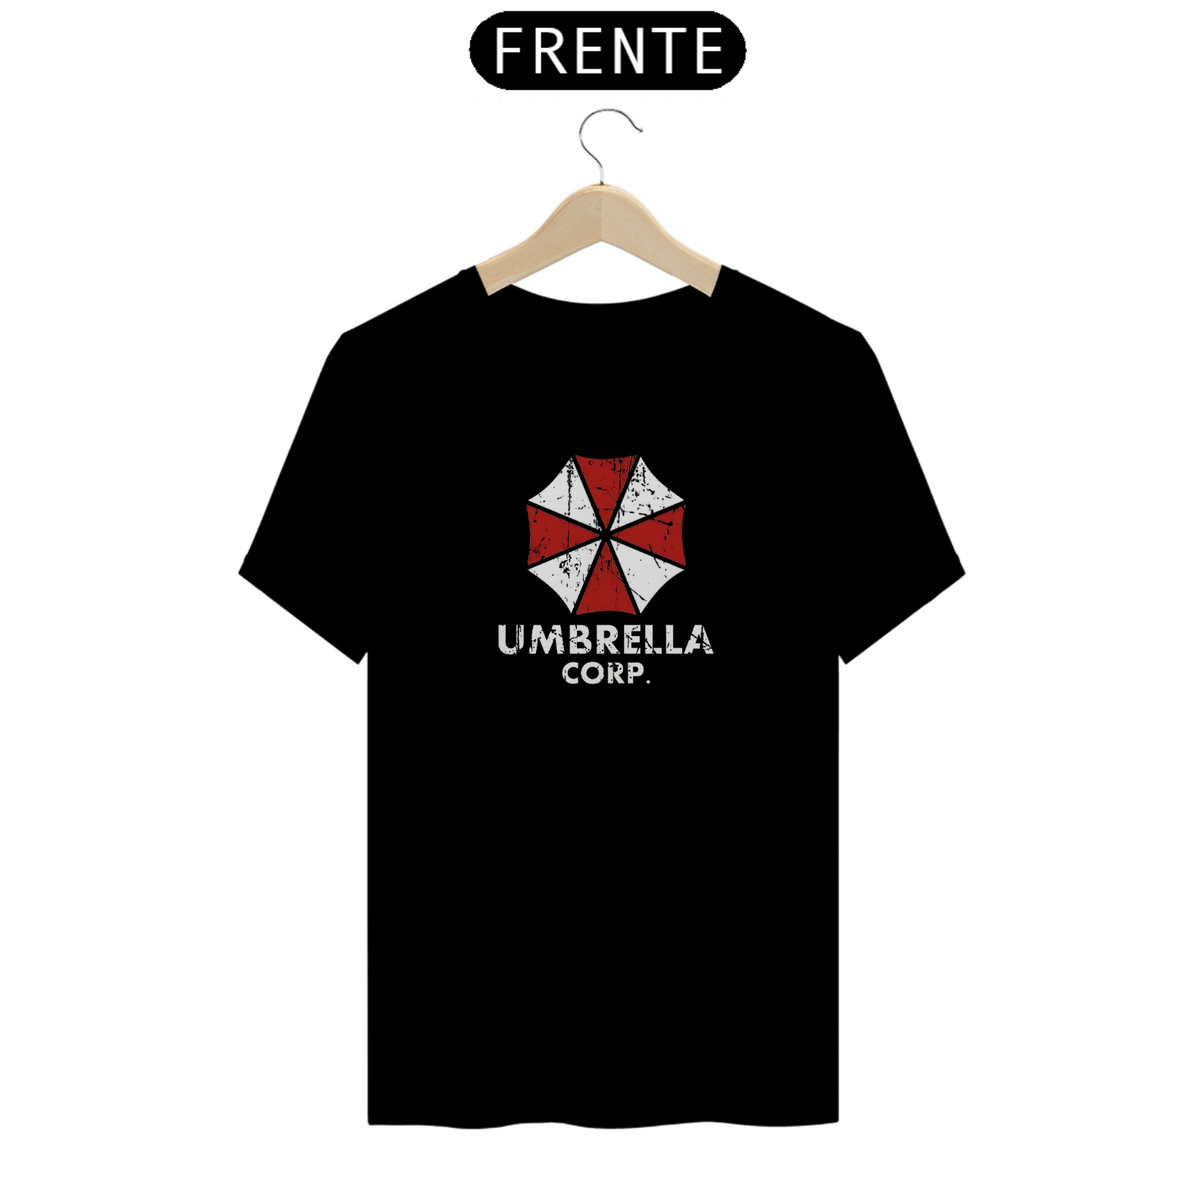 Nome do produto: Umbrella Corps - Resident Evil